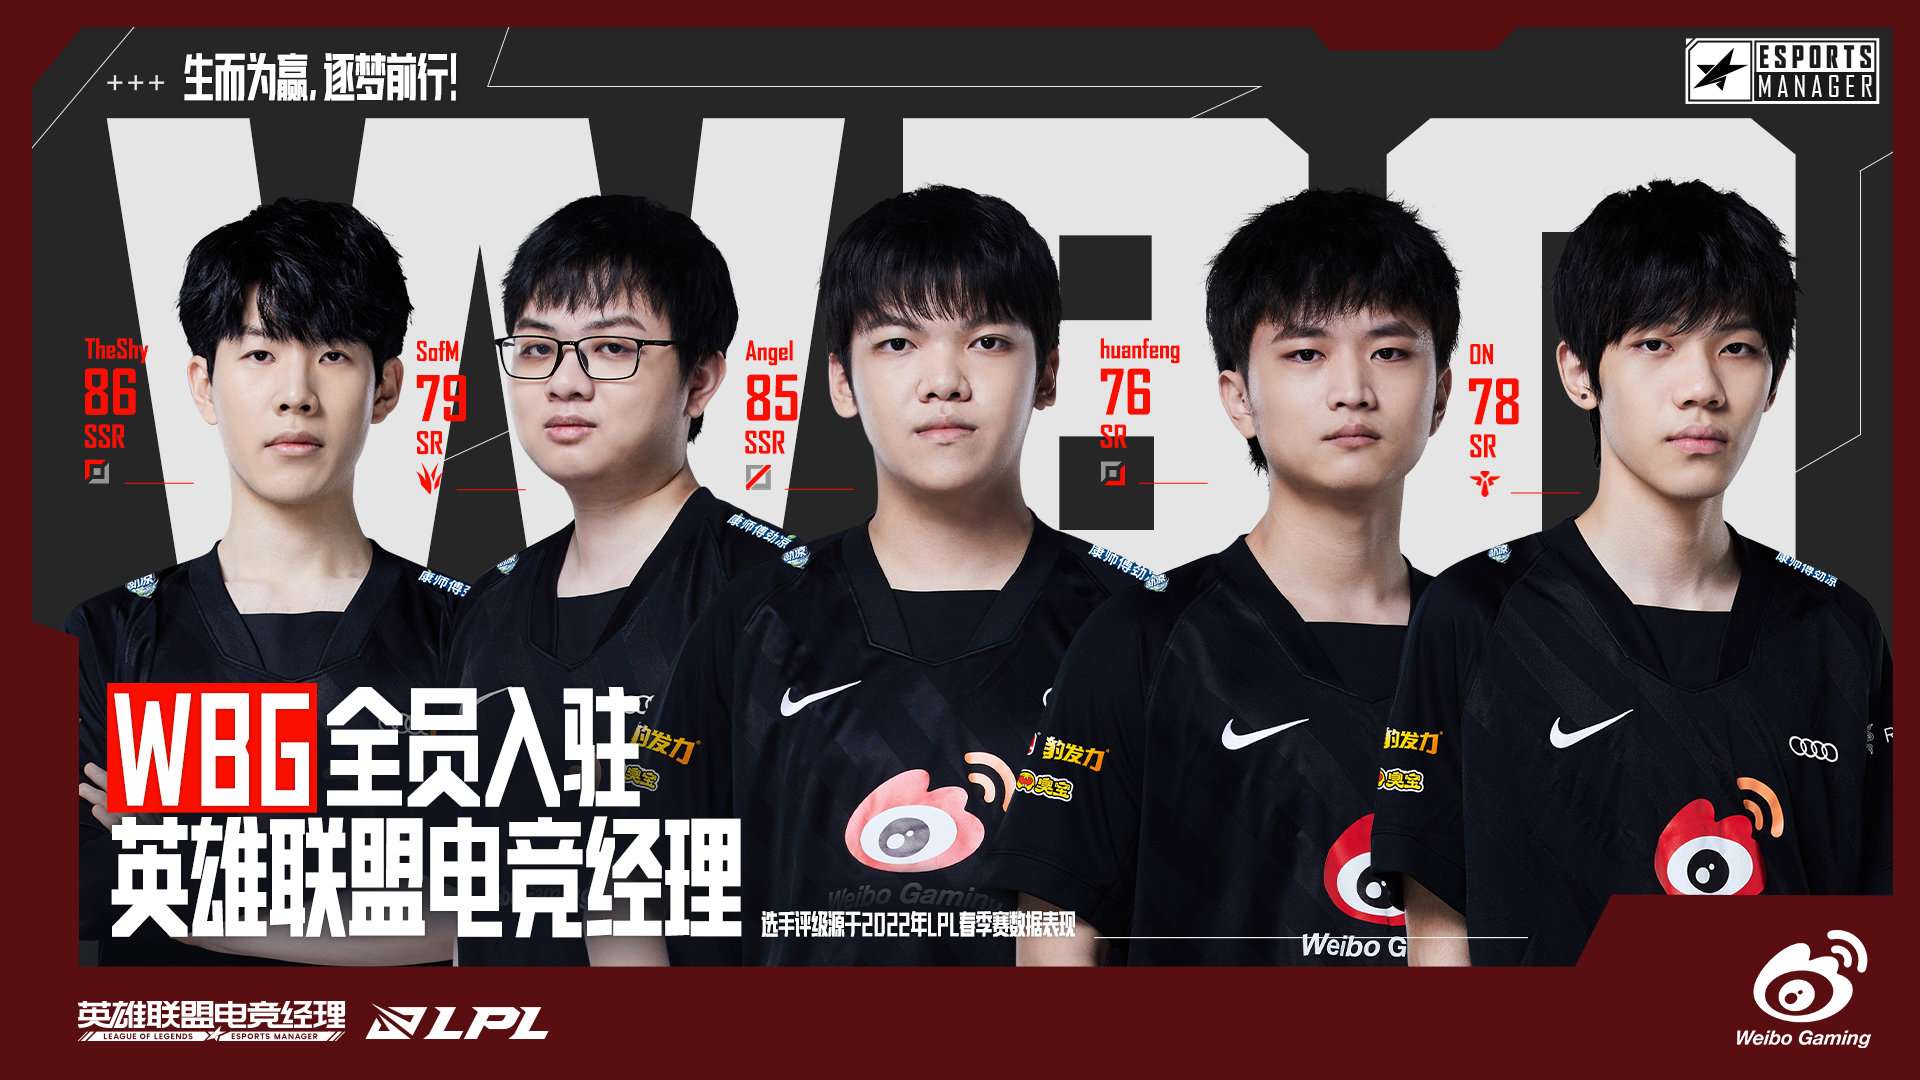 Đội hình của Weibo Gaming trong LoL Esports Manager.